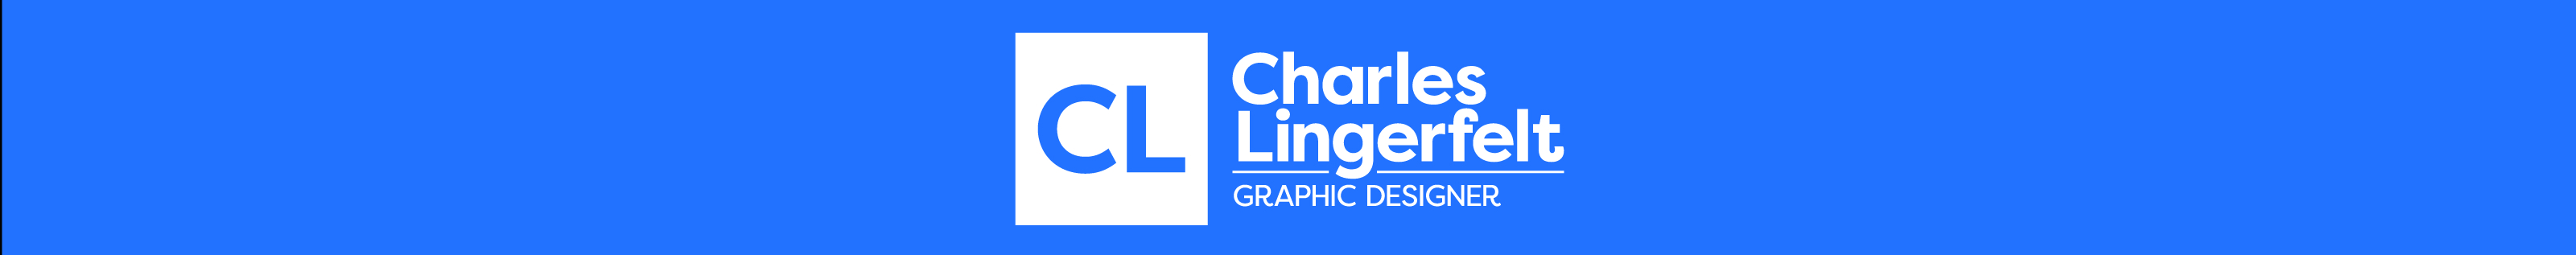 Bannière de profil de Charles Lingerfelt